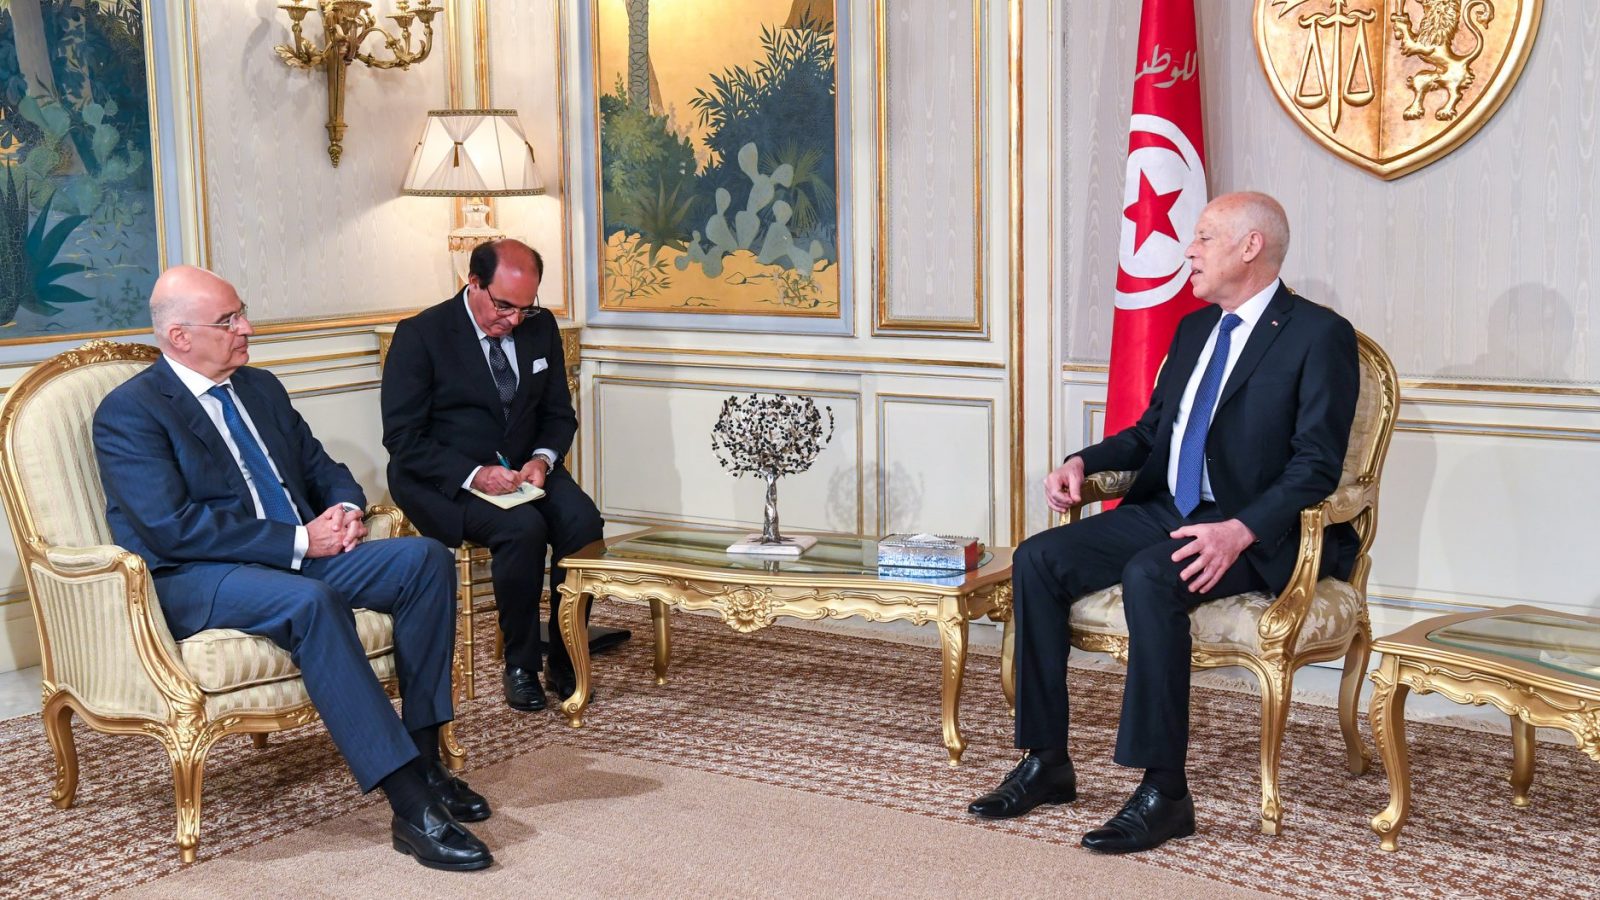 وزير الخارجية اليوناني في قصر قرطاج: اليونان مع مغادرة كل القوى أراضي ليبيا